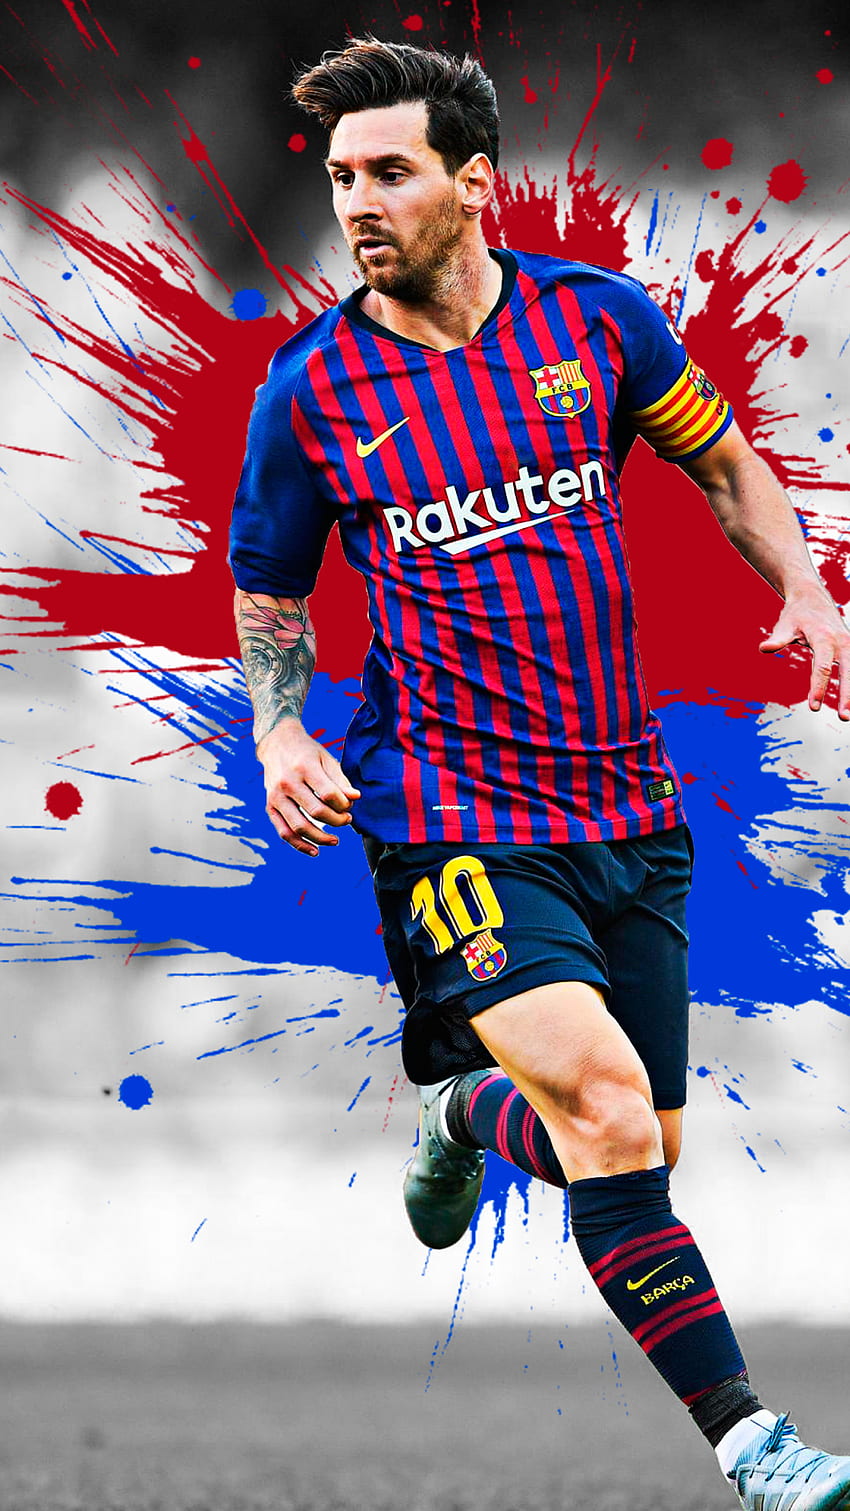 Hãy tải hình nền di động HD của Messi và choáng ngợp với vẻ đẹp của ngôi sao bóng đá này. Trải nghiệm chất lượng hình ảnh tuyệt vời và giữ bản thân đầy đam mê cho Niềm vui của mình, đừng bỏ lỡ cơ hội này!